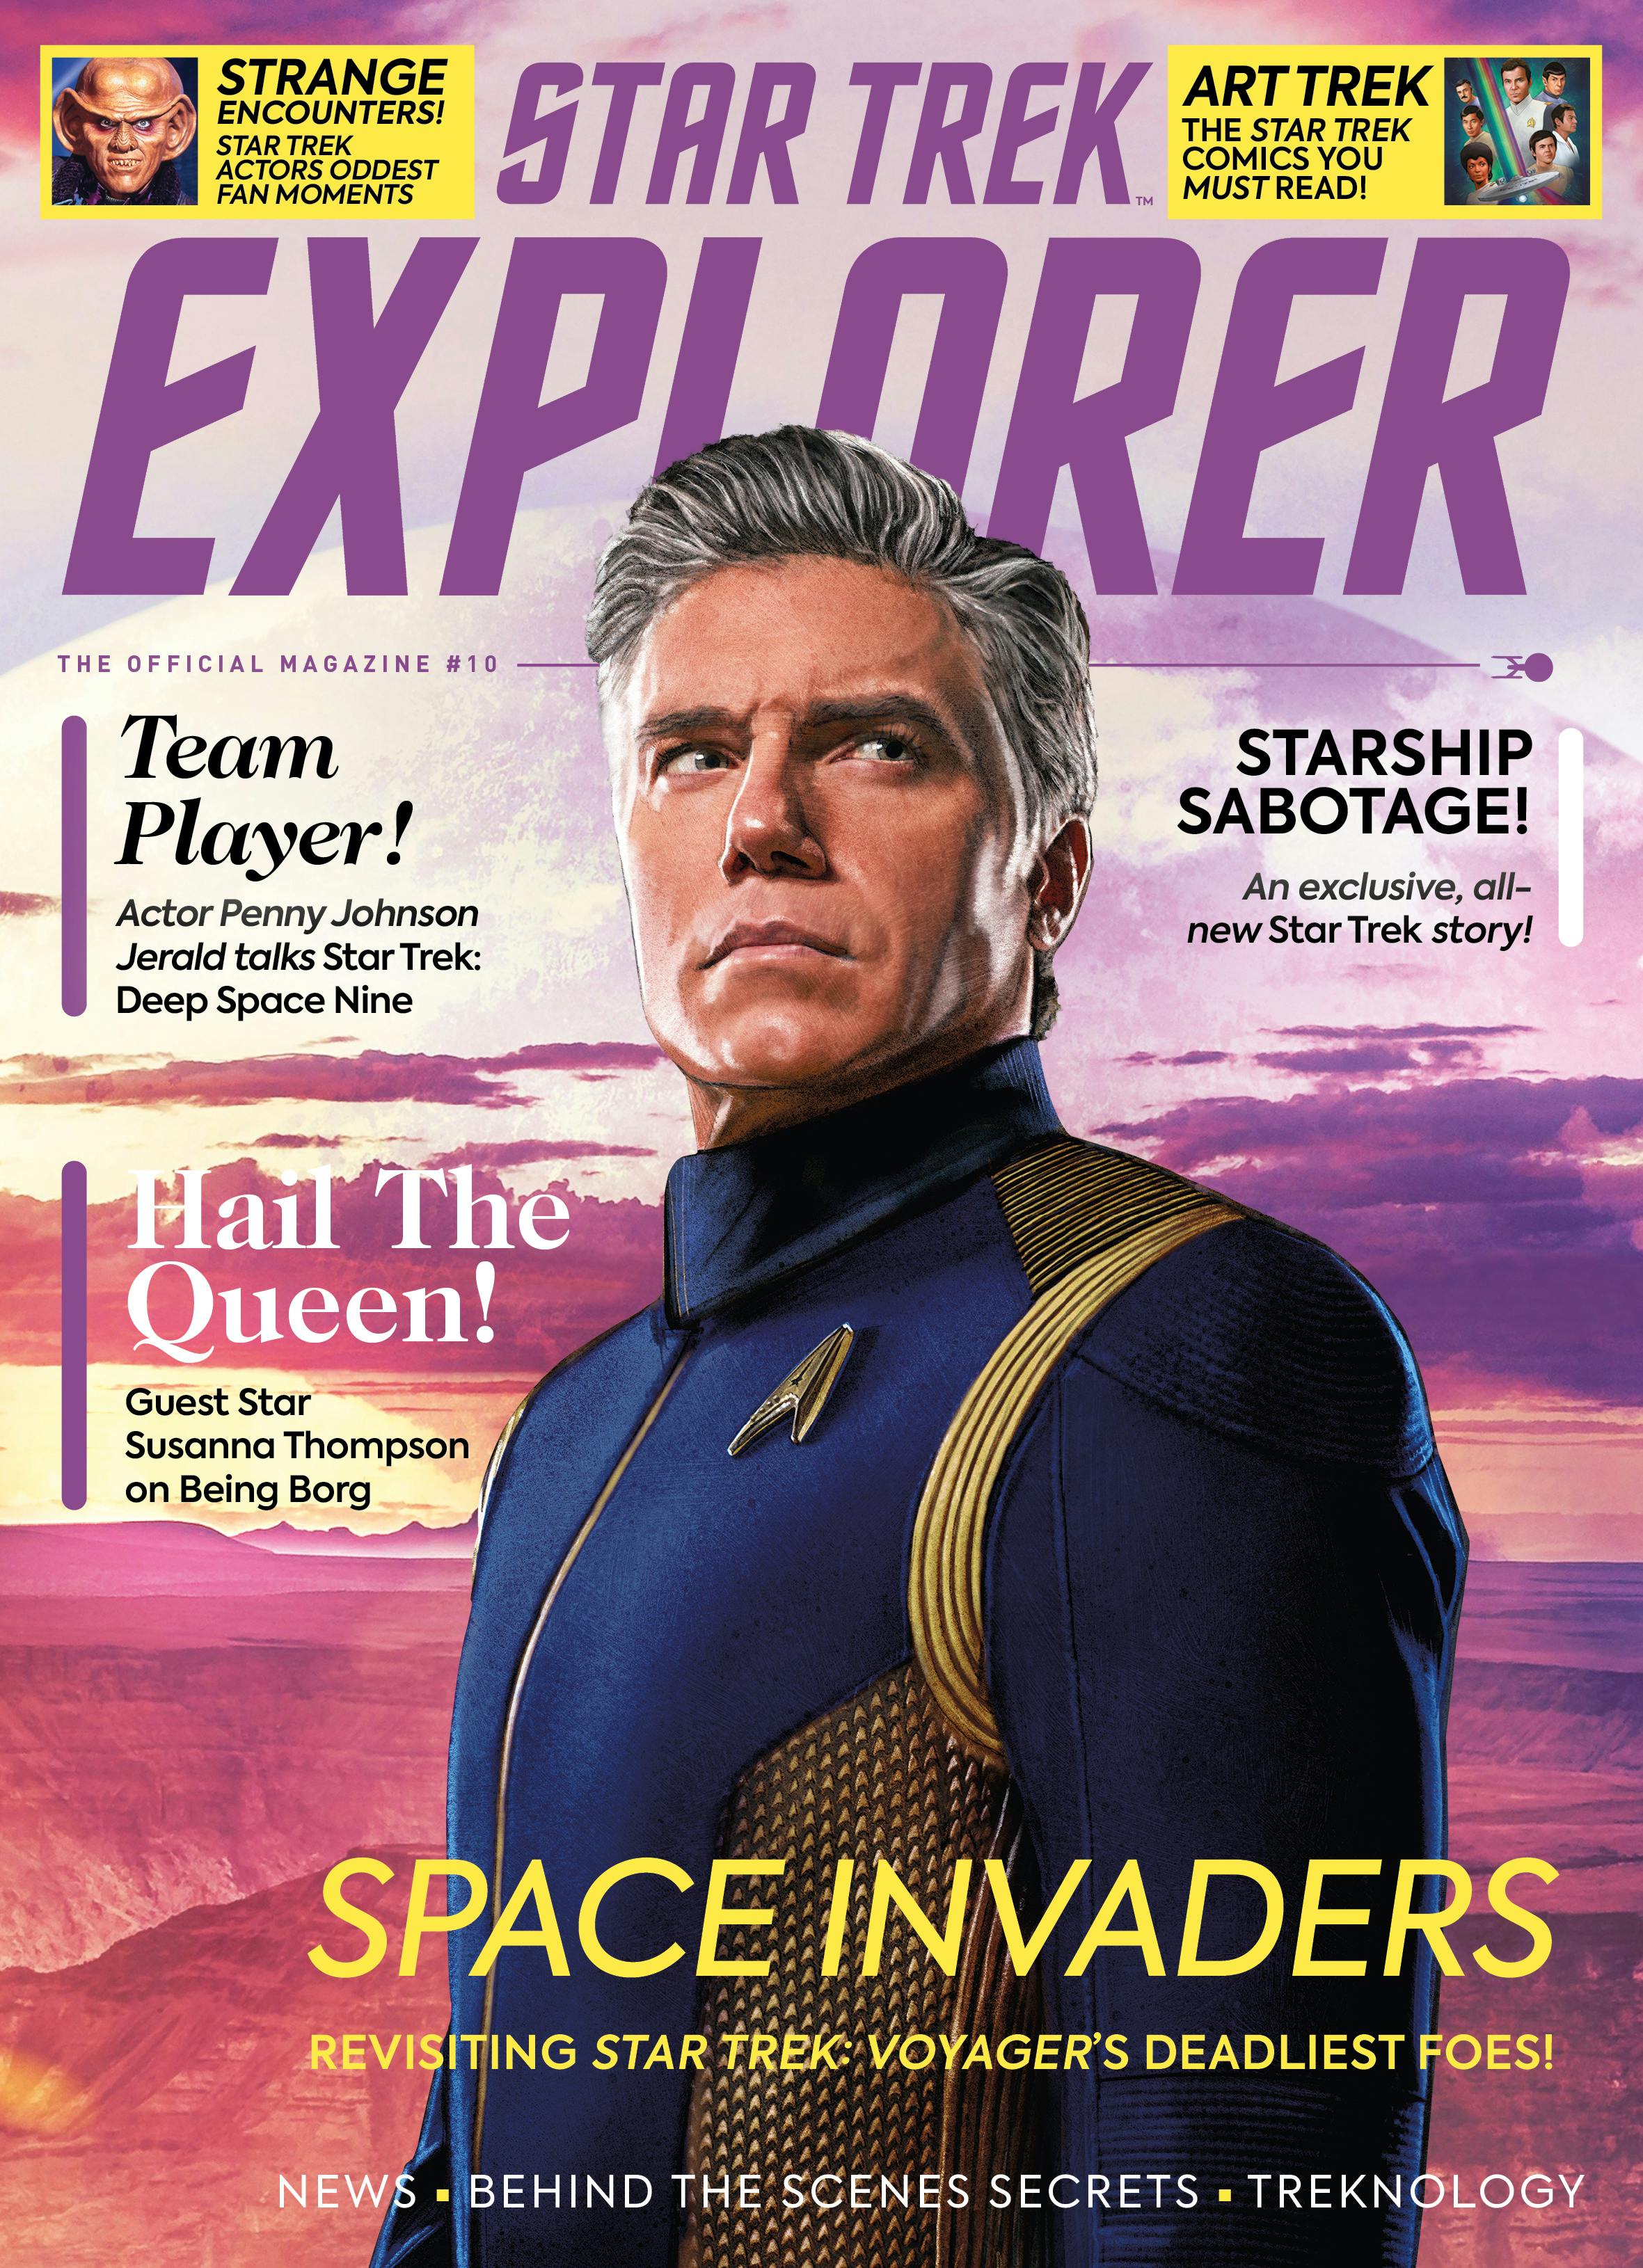 Star Trek Explorer #10 newsstand cover featuring Captain Pike